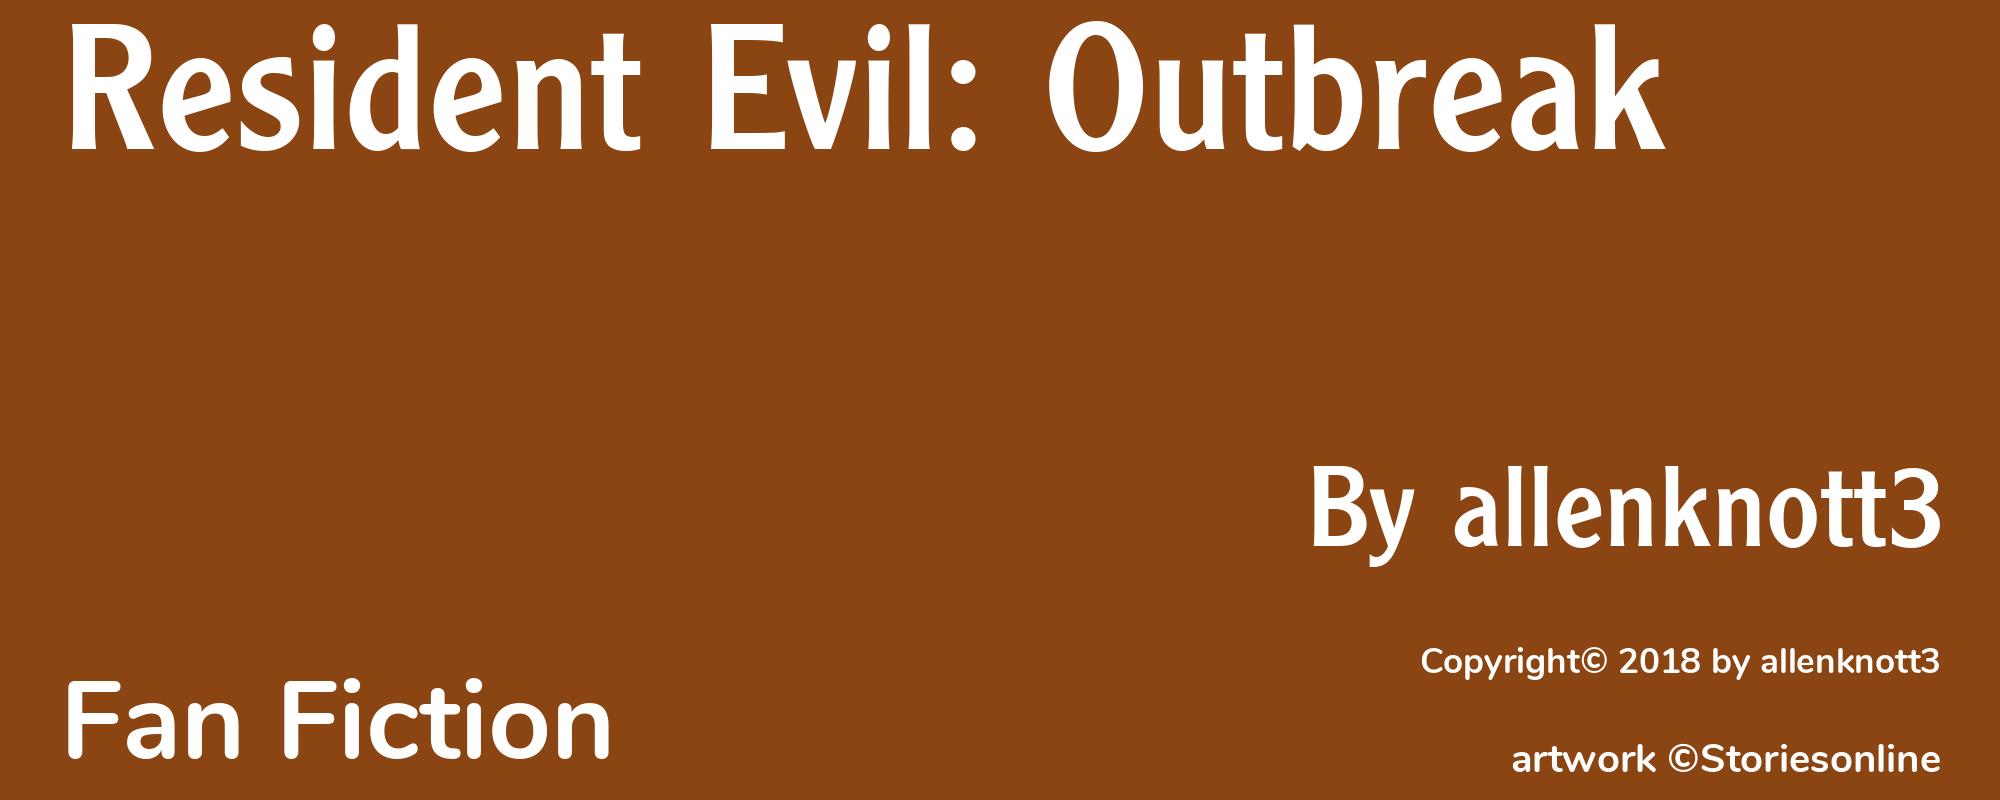 Resident Evil: Outbreak - Cover